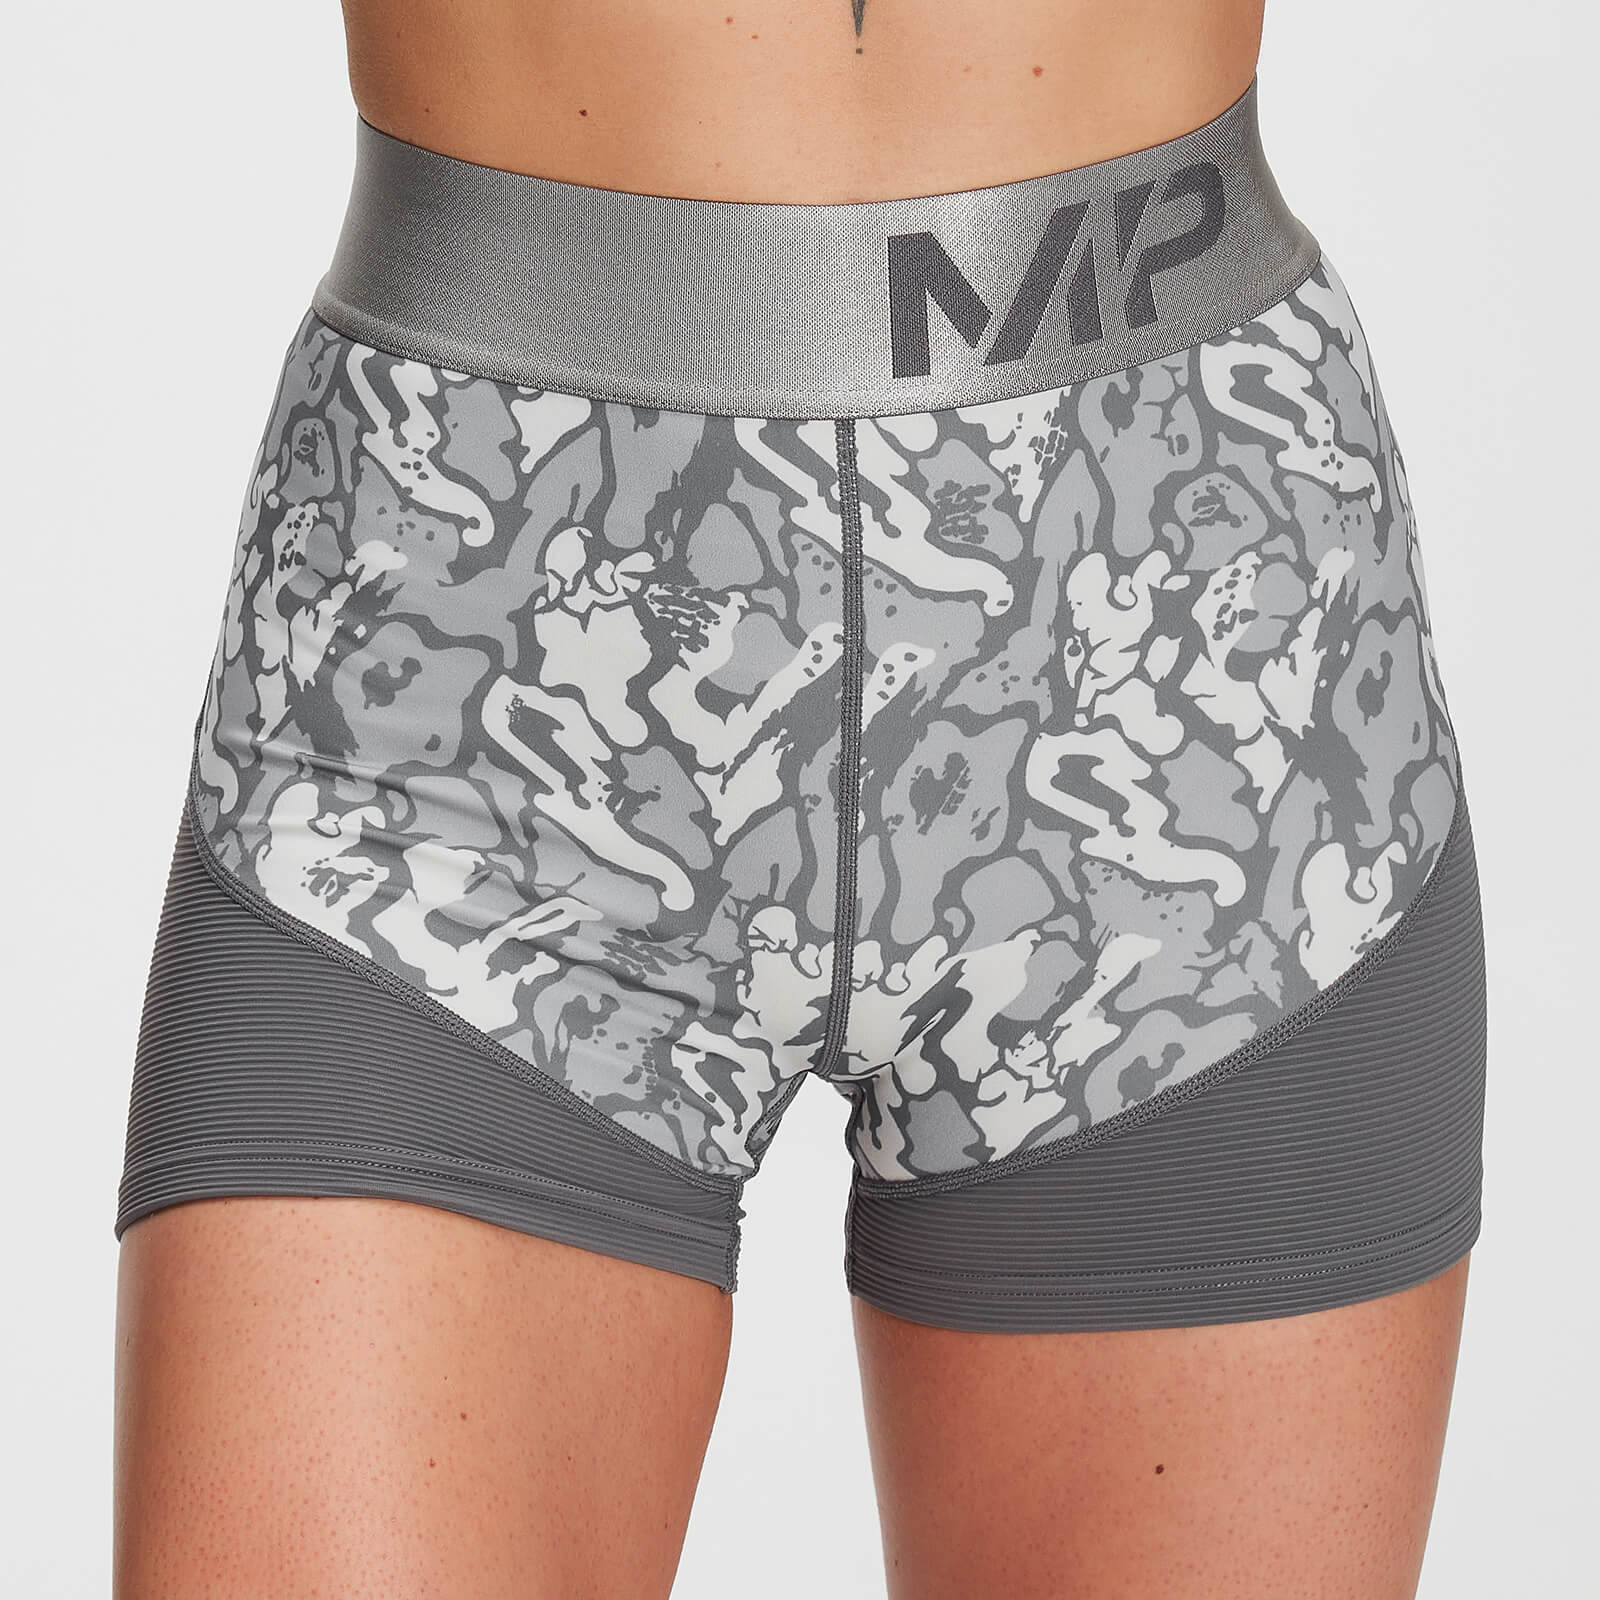 Pantalones cortos Textured Adapt para mujer de MP - Gris carbón - XS